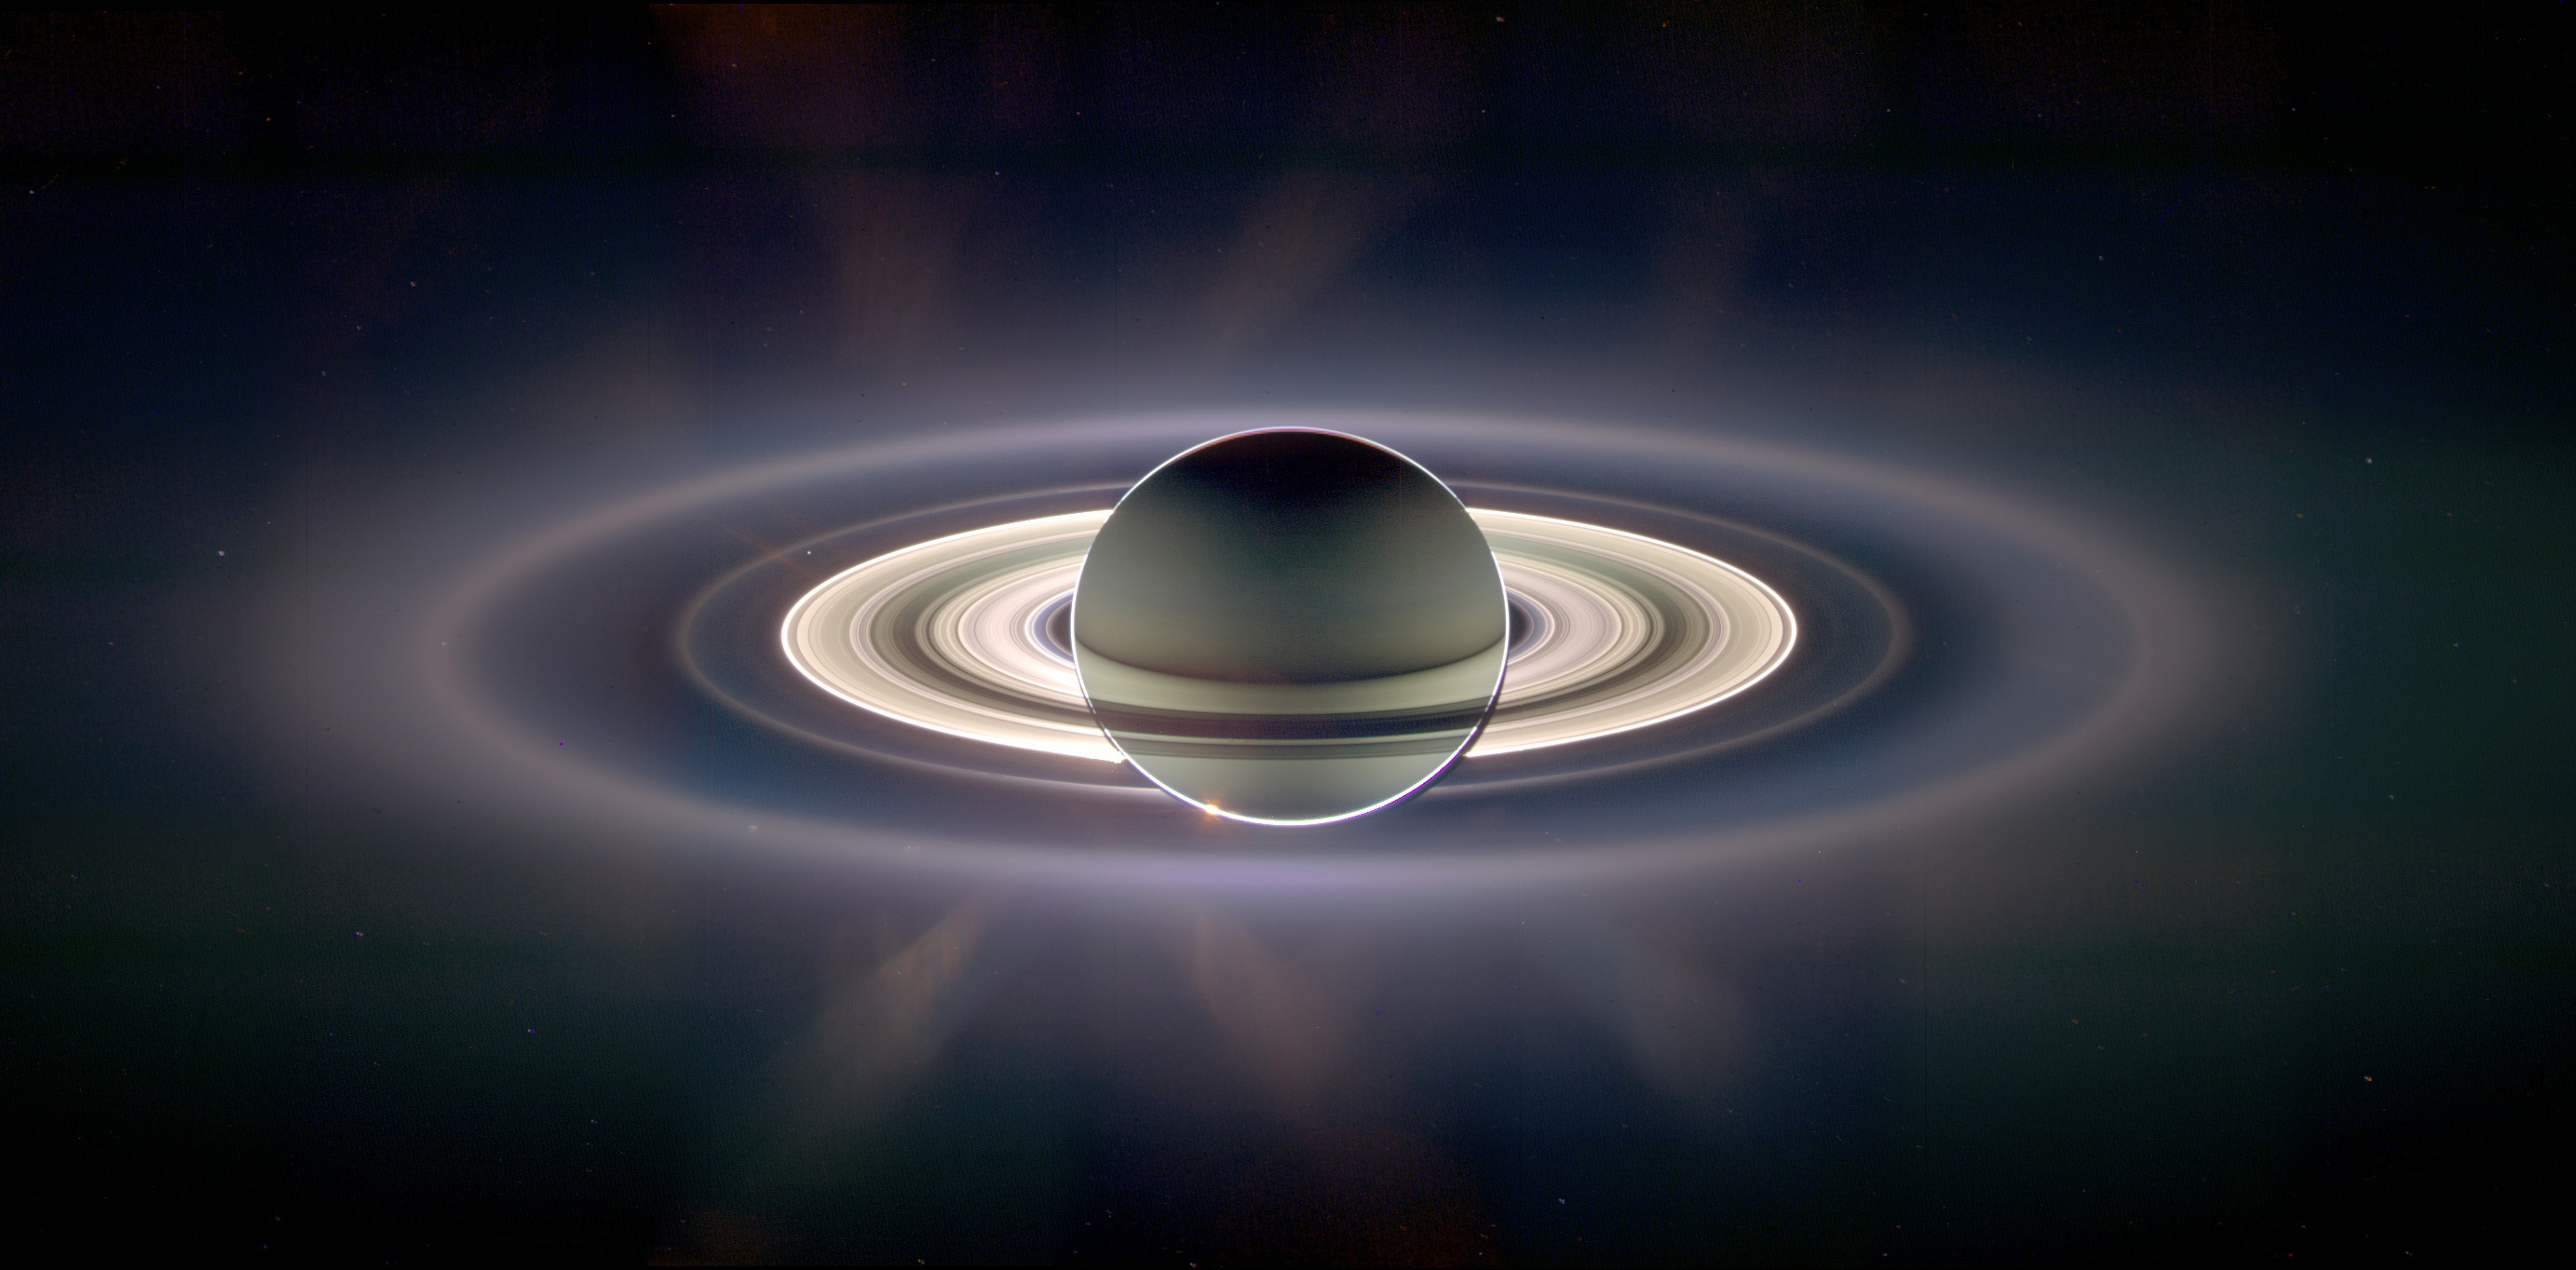 Bugün Satürn günü; Satürn “sorumluluk” demektir